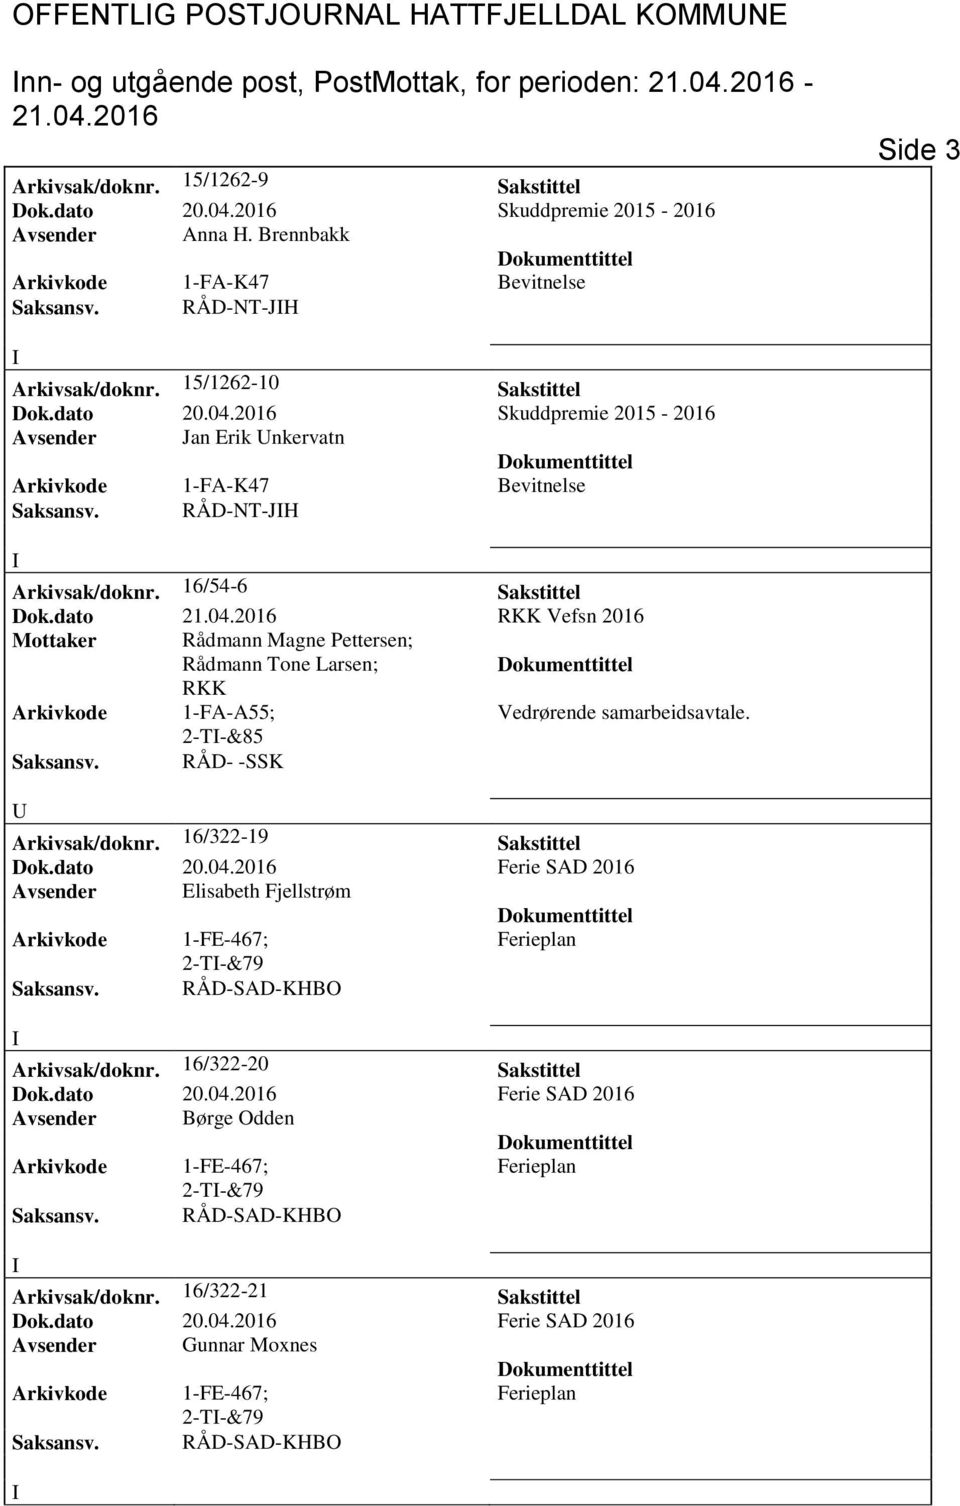 Skuddpremie 2015 - Avsender Jan Erik nkervatn Arkivkode 1-FA-K47 Bevitnelse Saksansv. RÅD-NT-JH Arkivsak/doknr. 16/54-6 Sakstittel Dok.dato 21.04.